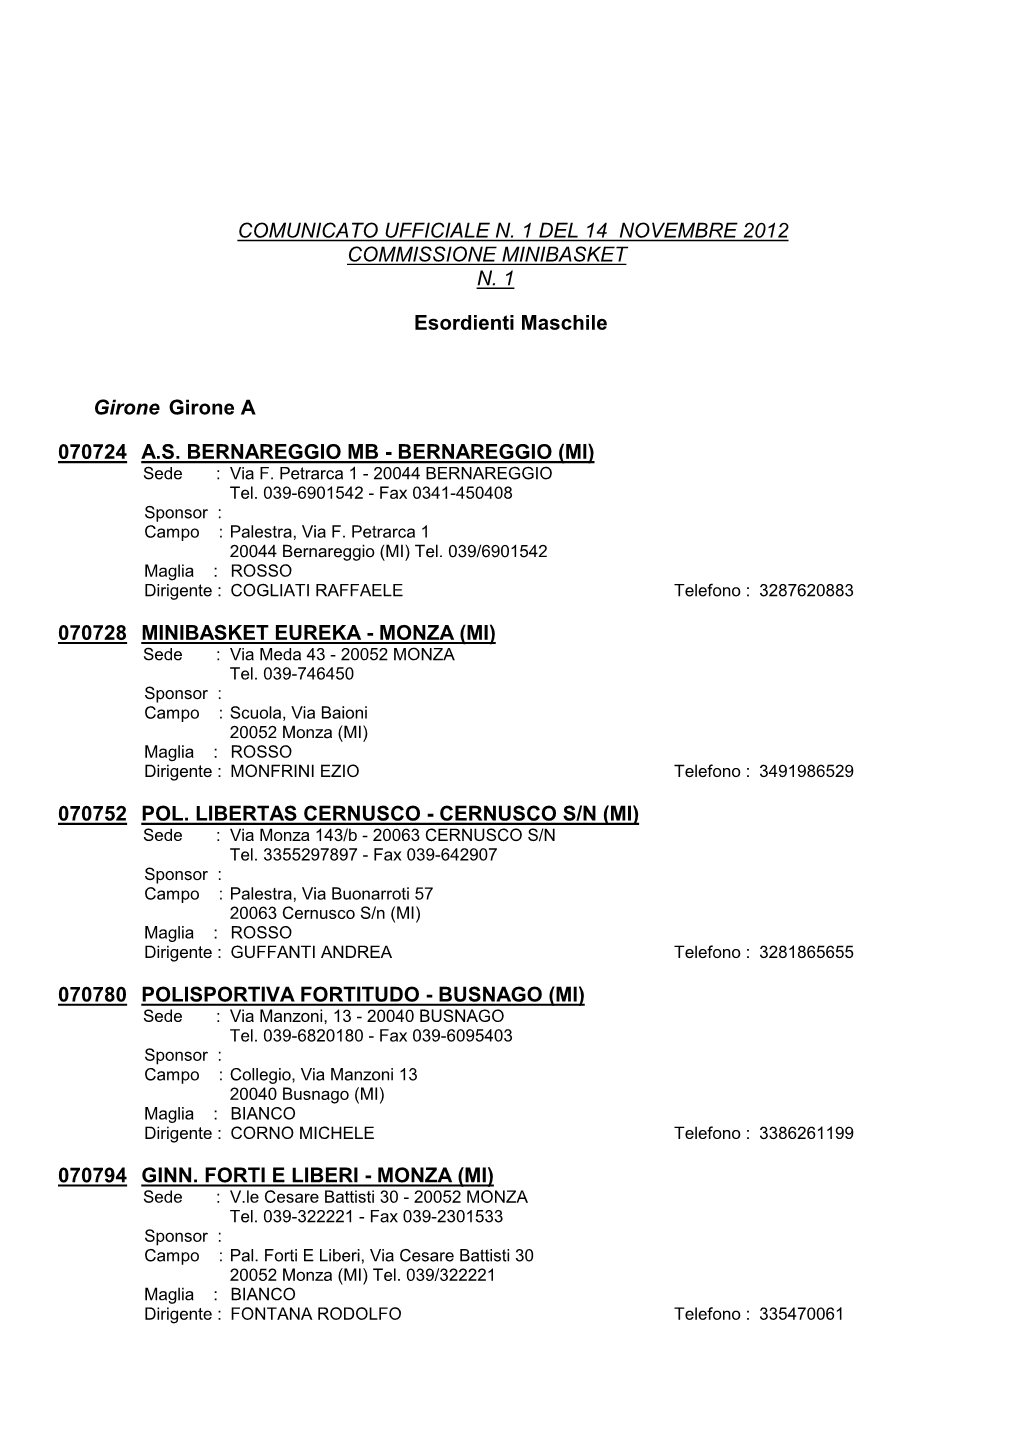 COMUNICATO UFFICIALE N. 1 DEL 14 NOVEMBRE 2012 COMMISSIONE MINIBASKET N. 1 Esordienti Maschile Girone Girone a A.S. BERNAREGGIO